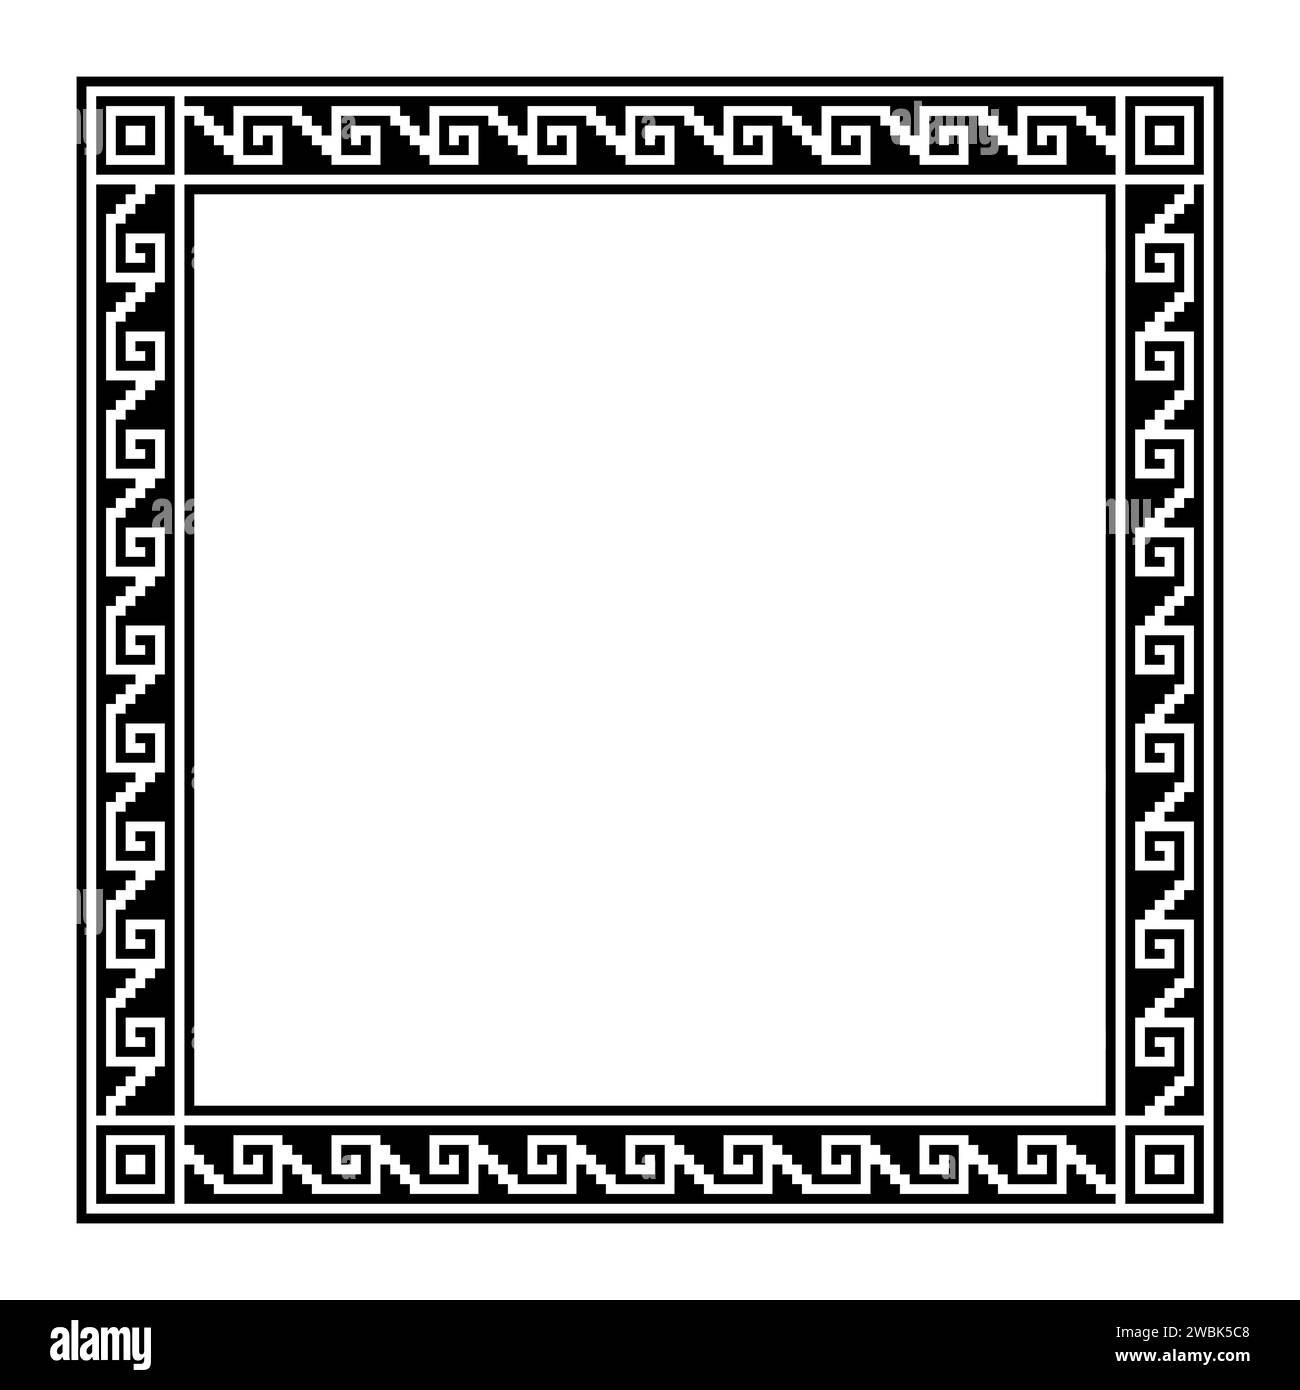 Motivo a gradini, montatura quadrata in stile azteco con motivo meandro. Confine fatto di gradini, perfettamente collegato a una spirale, simile alla chiave greca. Foto Stock